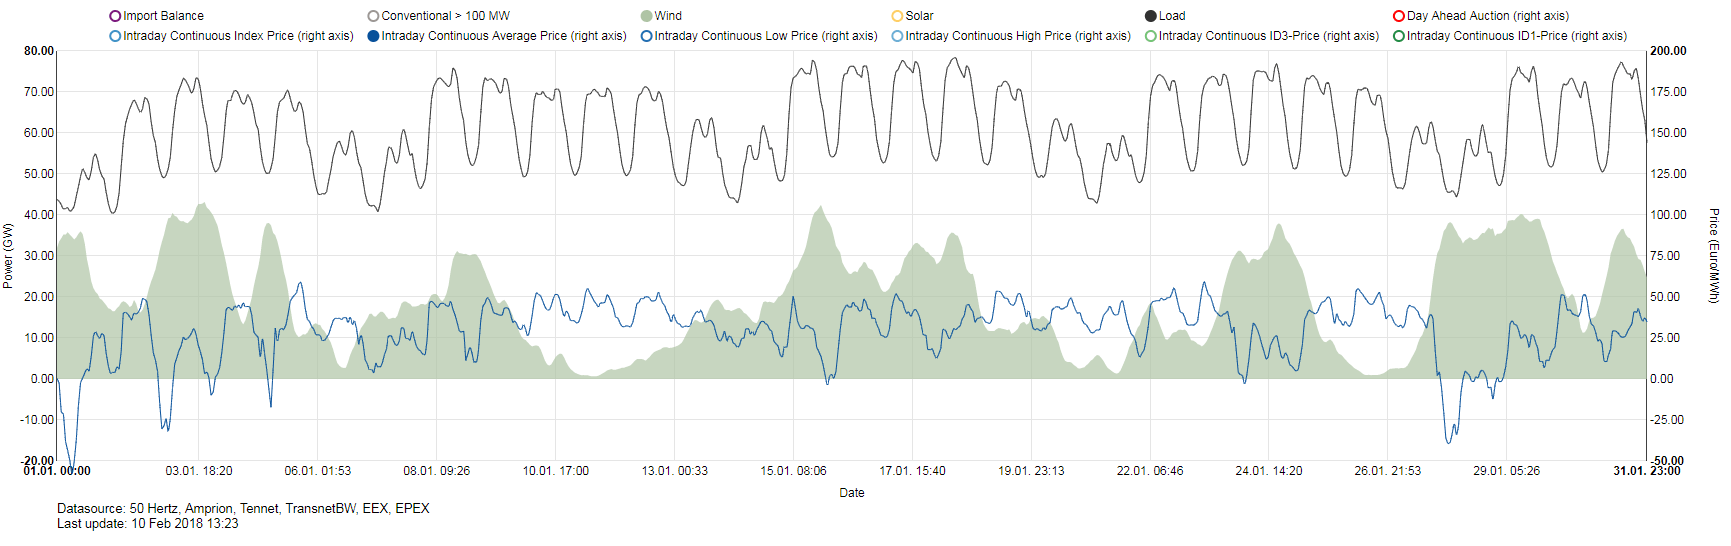 Ilustrace vlivu výroby větrných elektráren na cenu elektřiny. Výroba německých větrných elektráren (zeleně), průměrná cena elektřiny na vnitrodenním trhu na EEX v lednu 2018 (modře) a zatížení německé soustavy černě. Zdroj:www.energy-charts.de